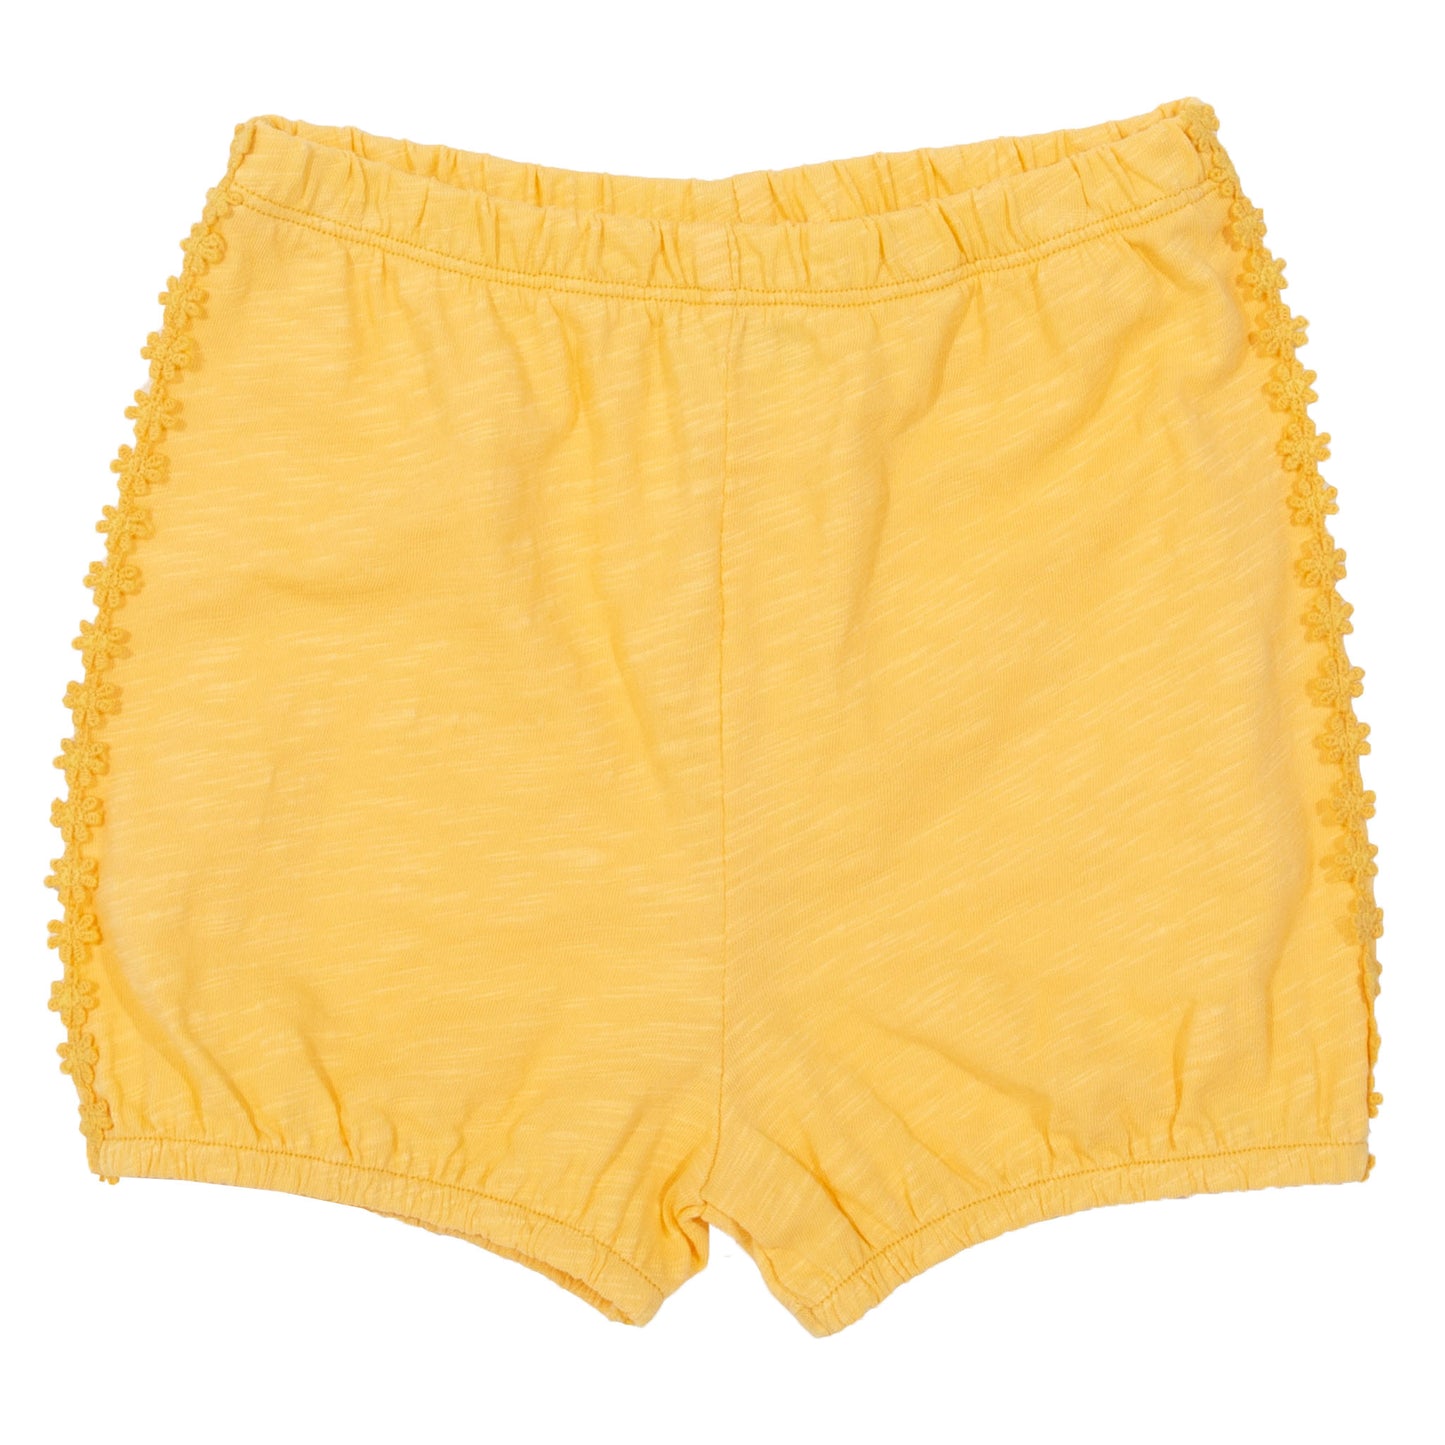 Daisy bubble yellow shorts